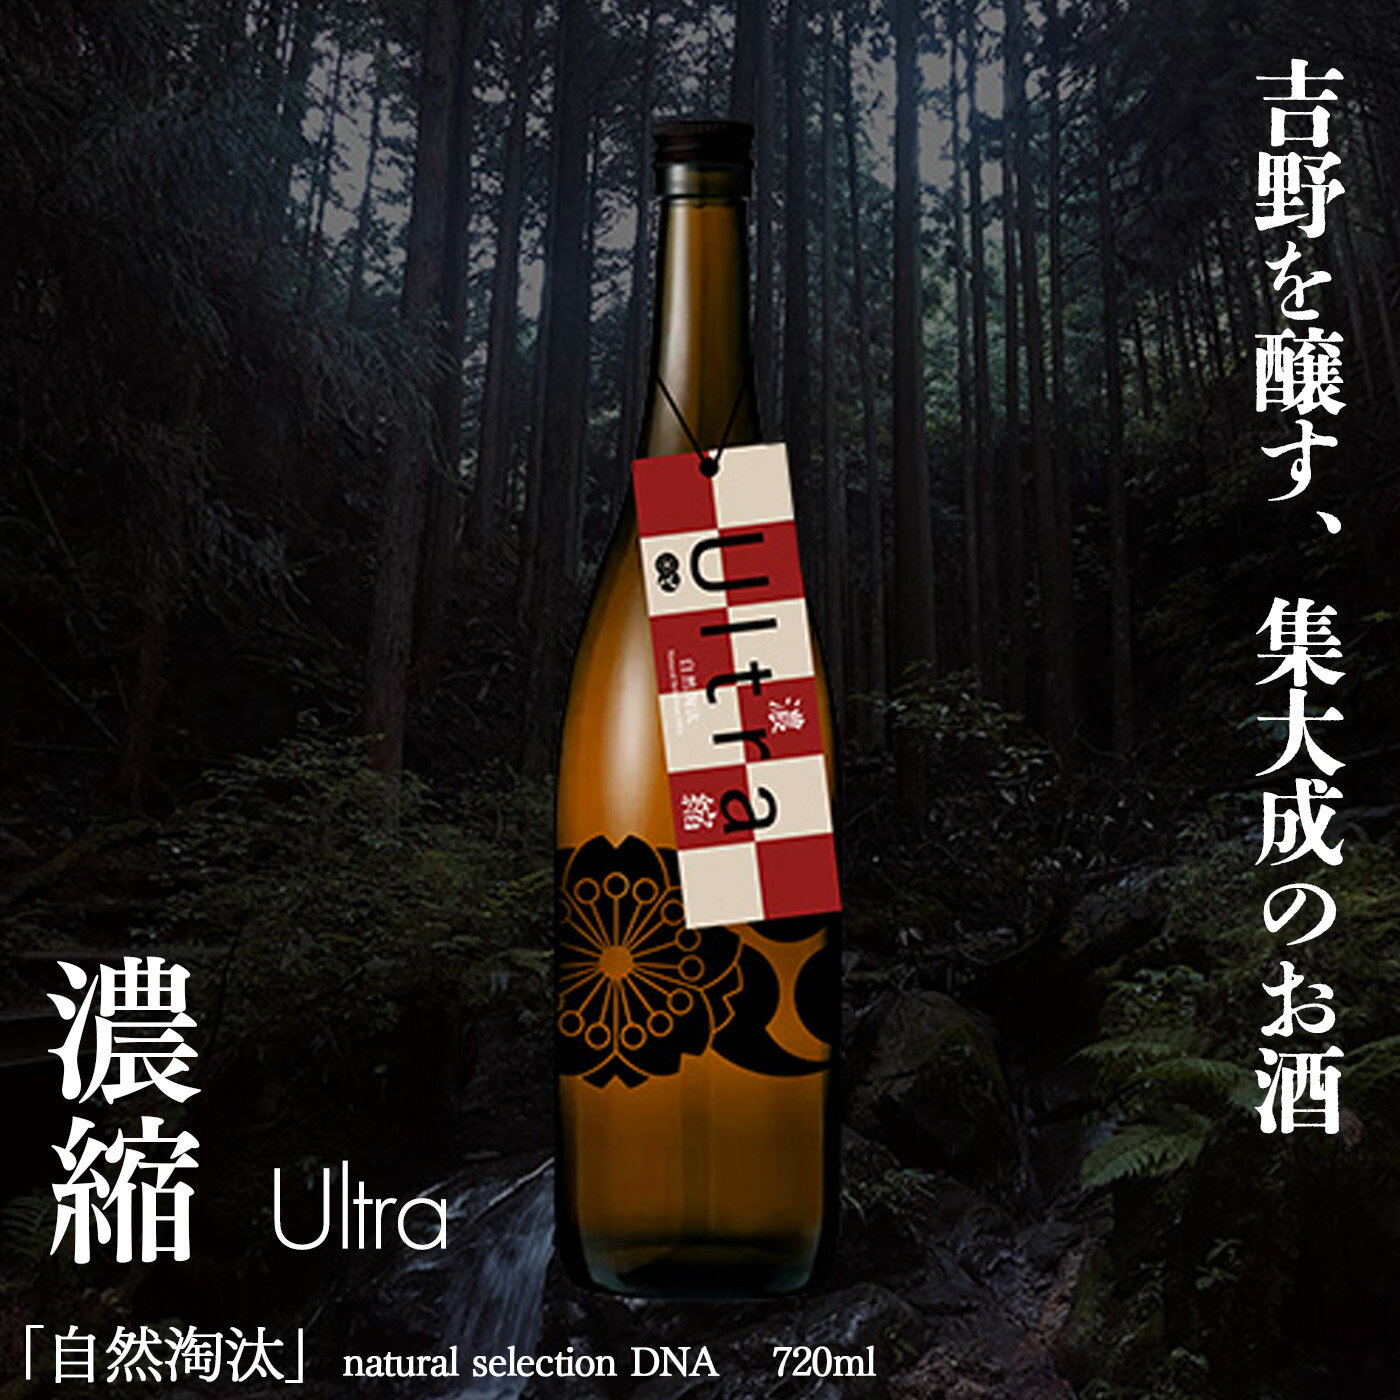 自然淘汰 natural selection DNA Ultra"濃縮" 日本酒 720ml 酒 美吉野酒造 奈良県 吉野町